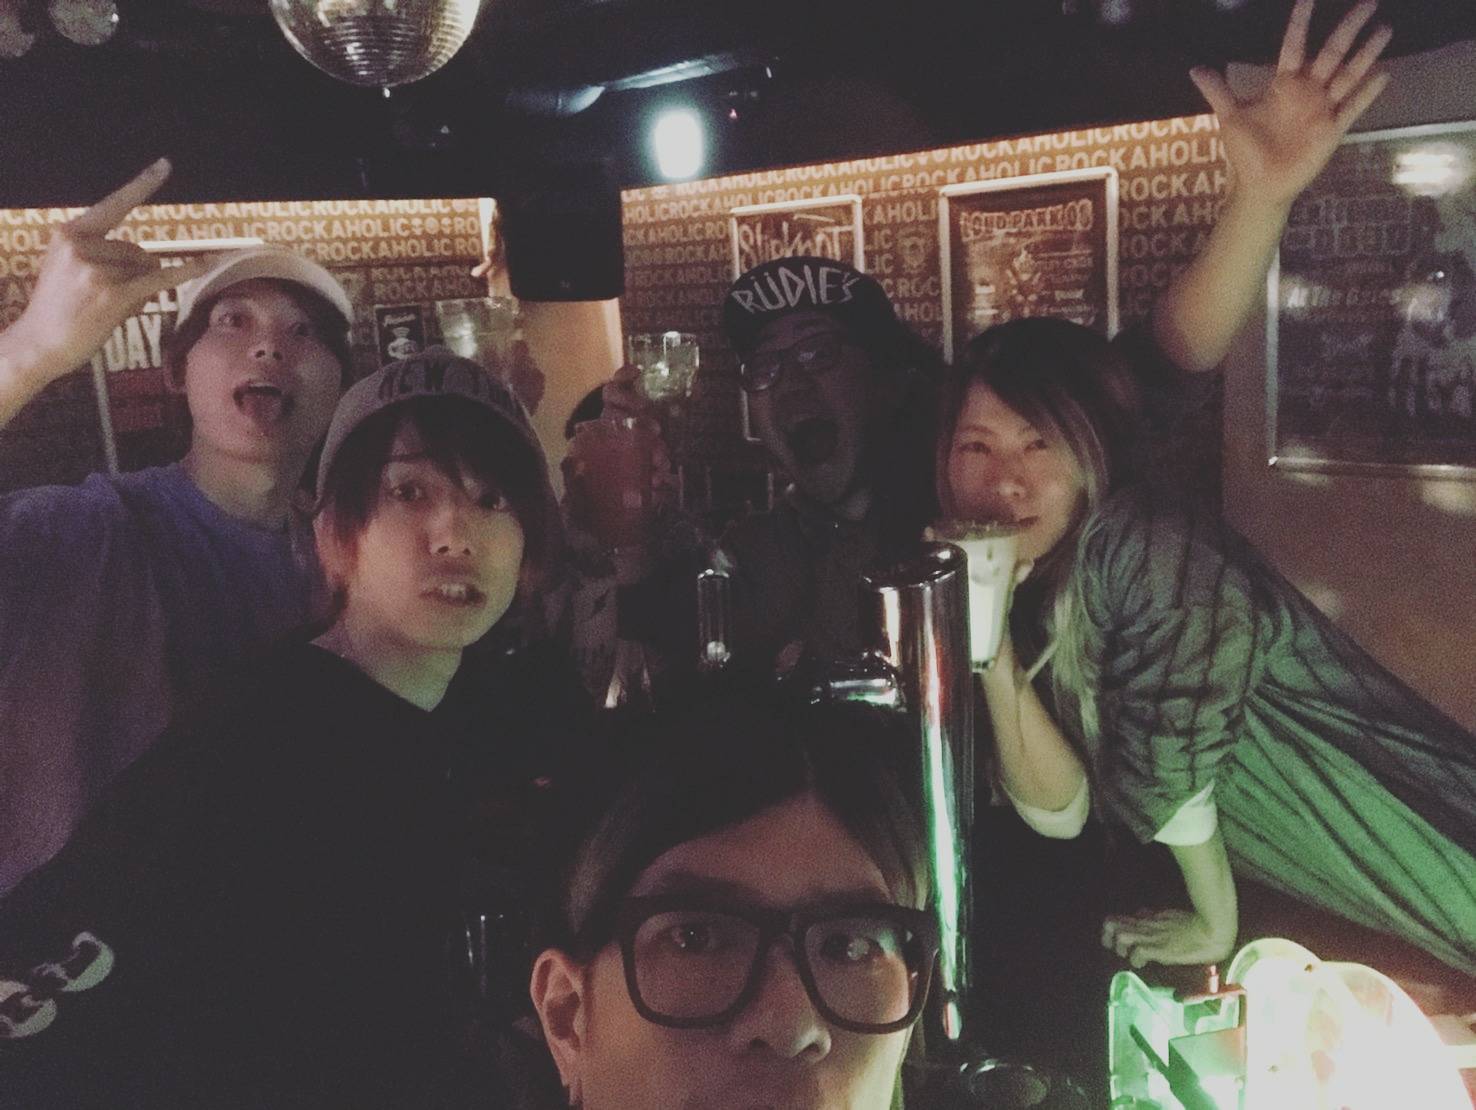 https://bar-rockaholic.jp/shibuya/blog/S_7372882430414.jpg